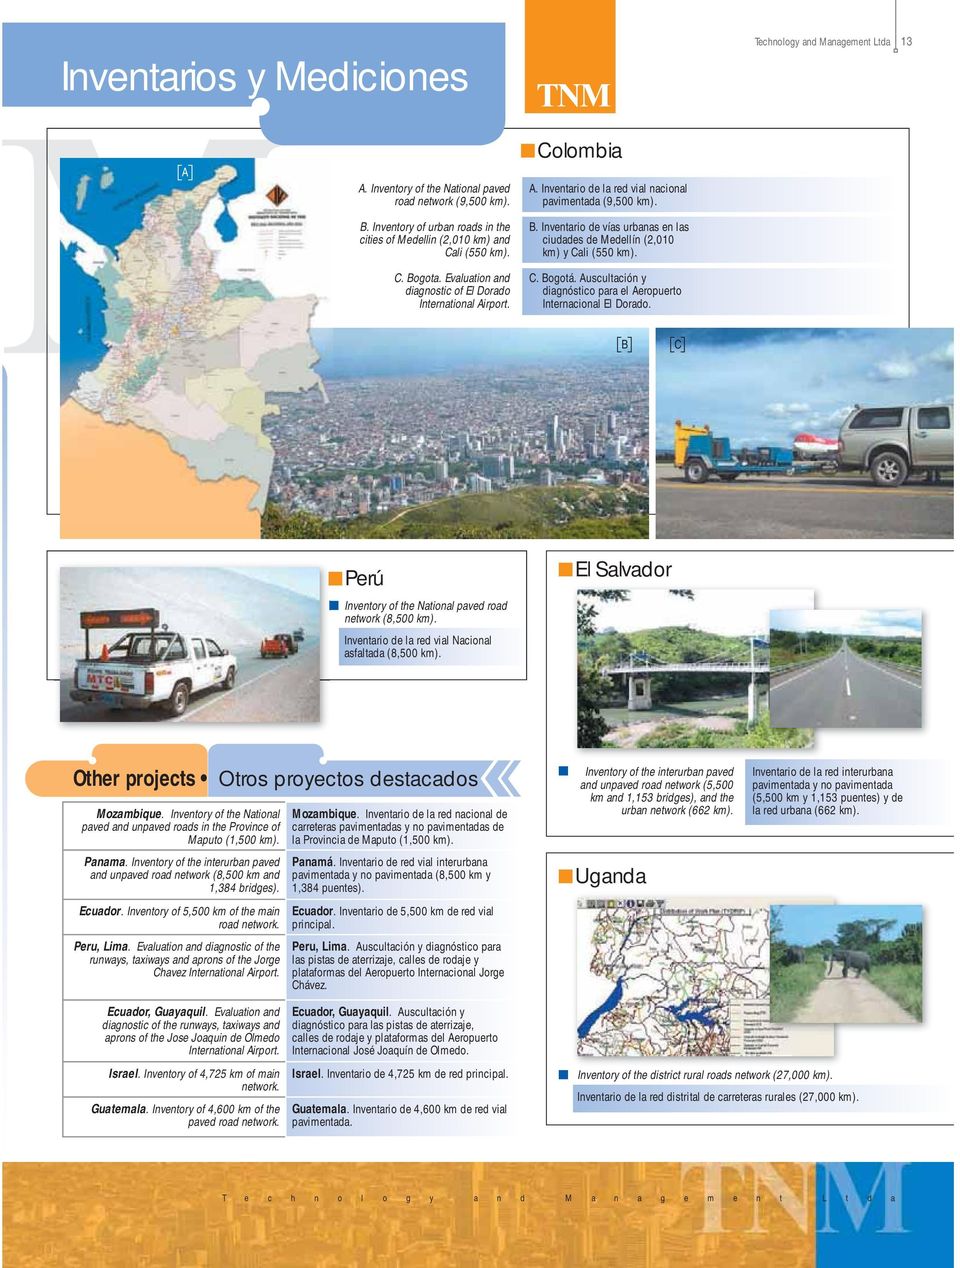 Inventario de vías urbanas en las ciudades de Medellín (2,010 km) y Cali (550 km). C. Bogotá. Auscultación y diagnóstico para el Aeropuerto Internacional El Dorado.